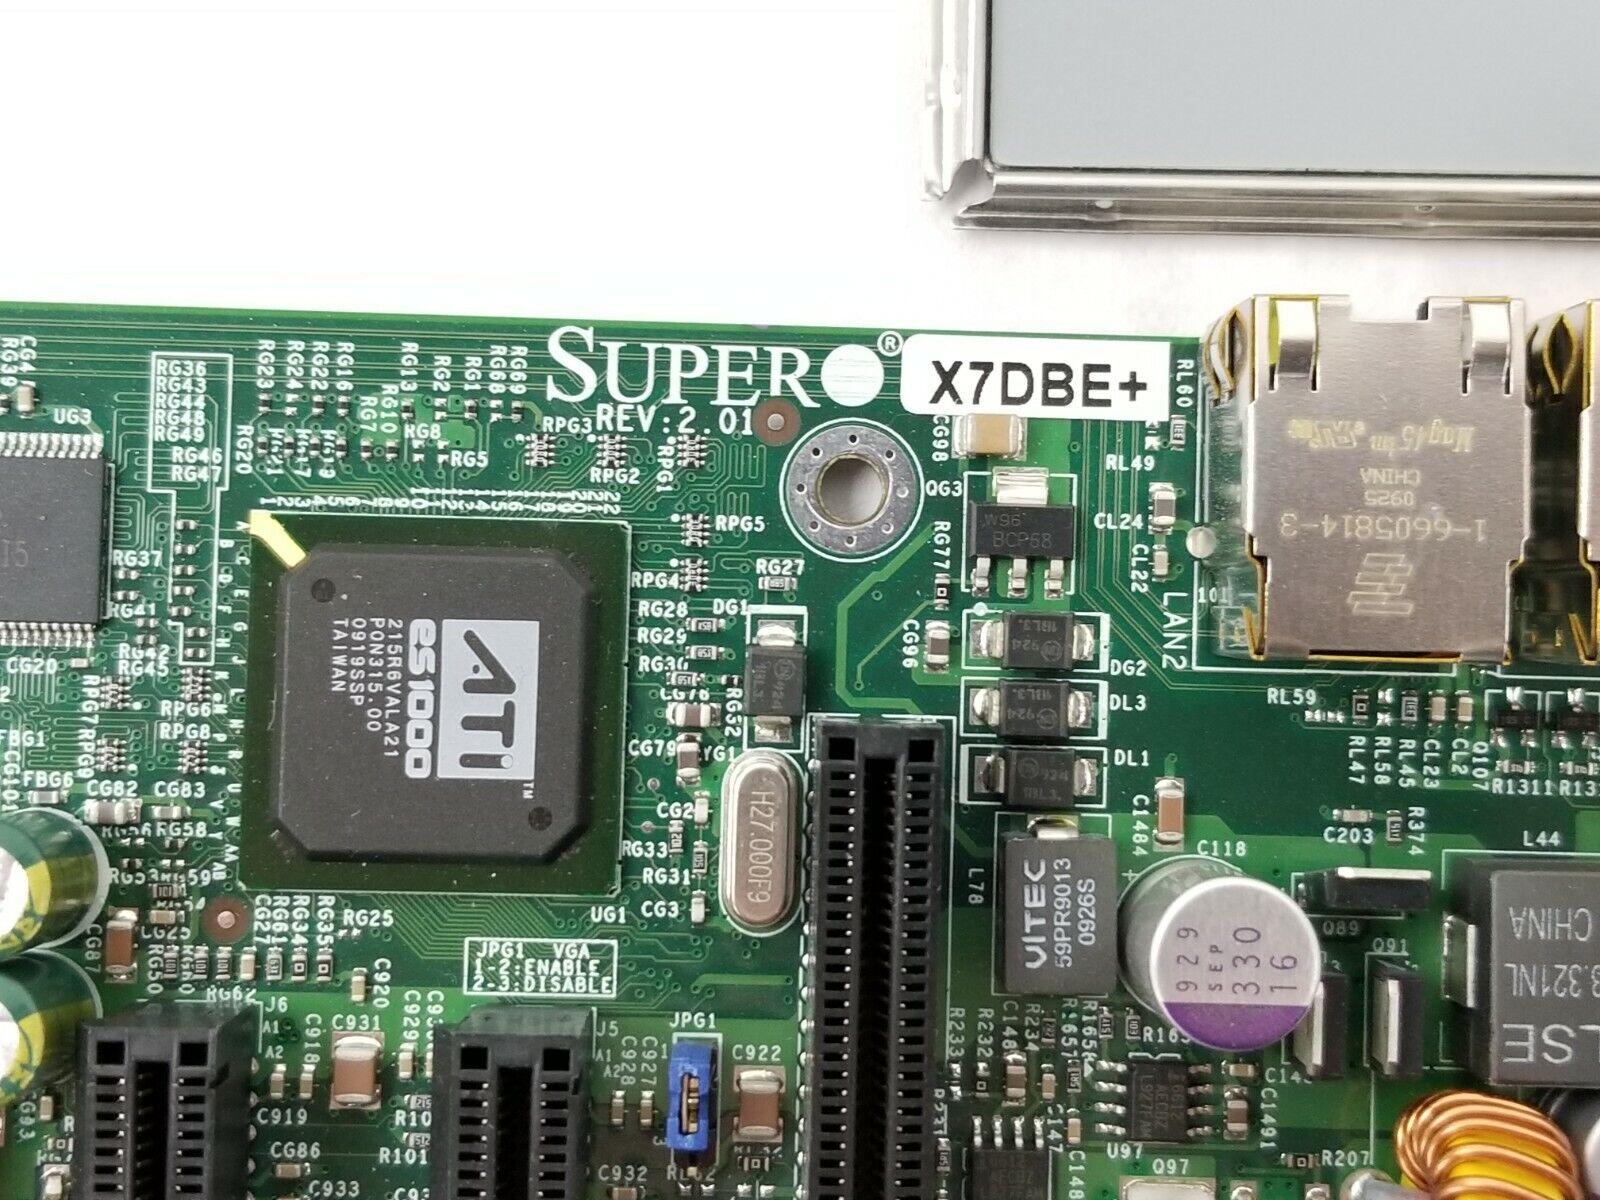 Supermicro X7DBE+ Motherboard 2x Intel Xeon 5140 2.33GHz 4GB RAM I/O Shield